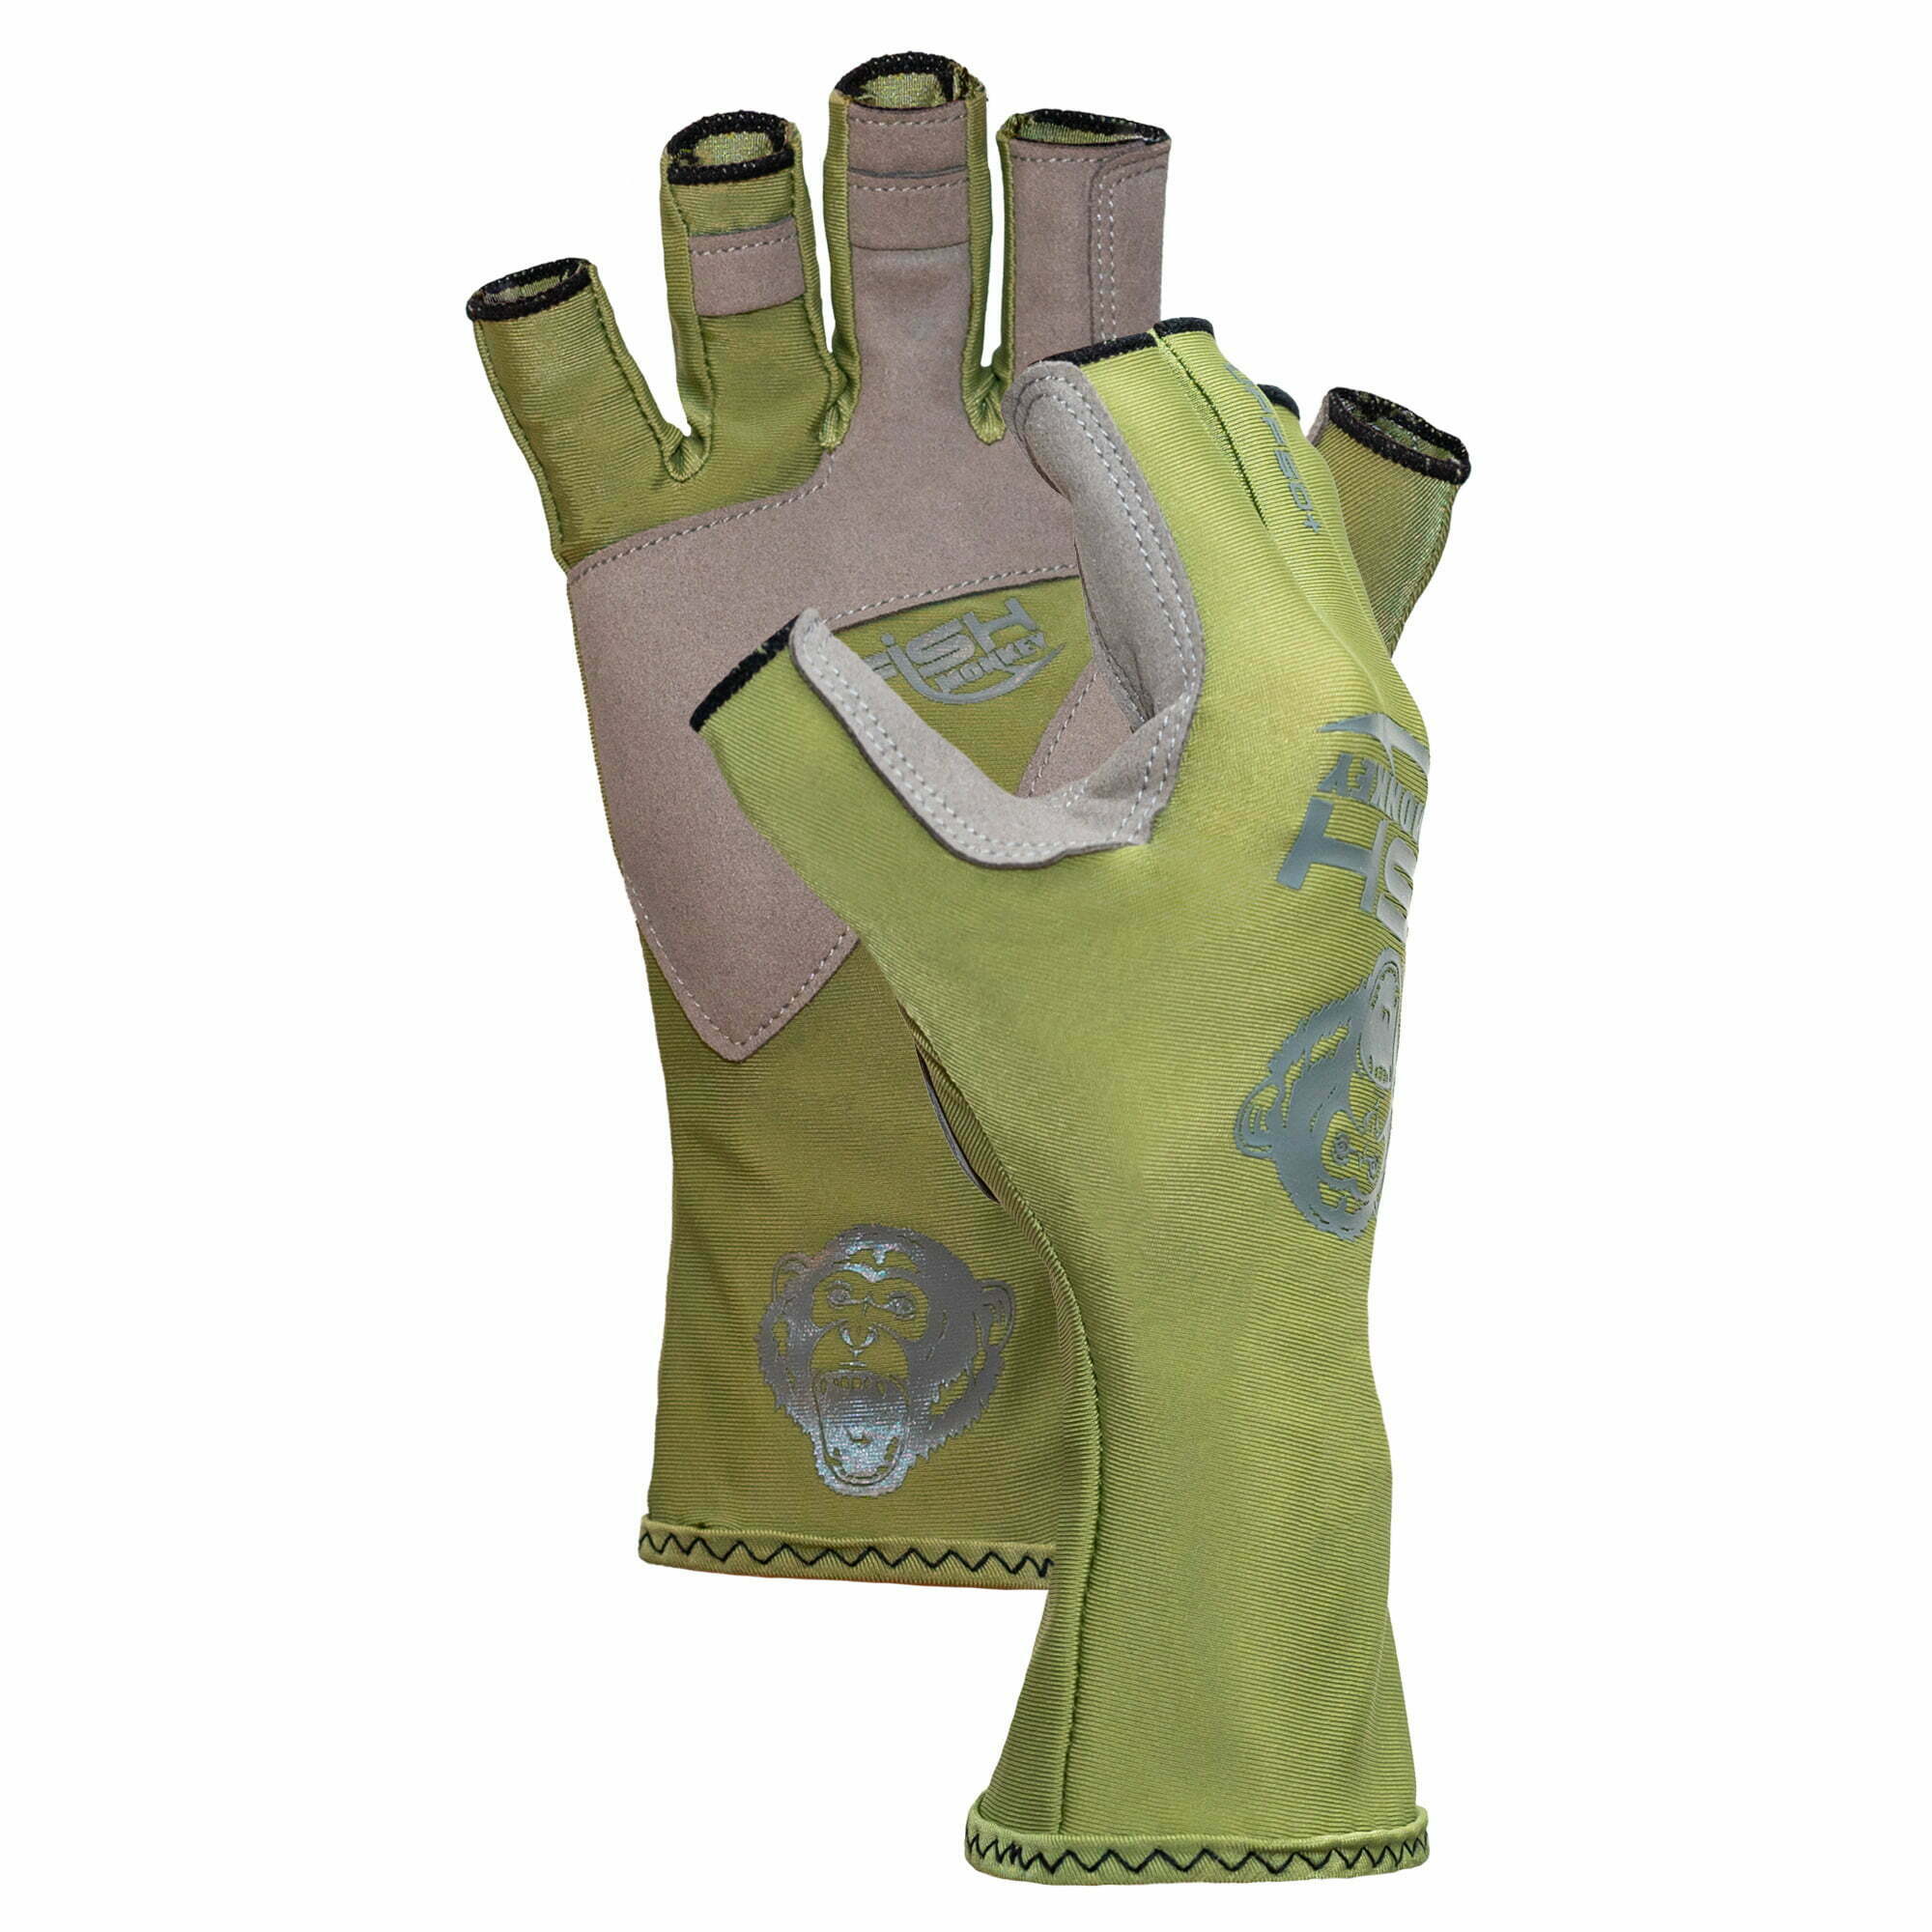 Fish Monkey Guide Glove XL Pro 365 Royal Blue